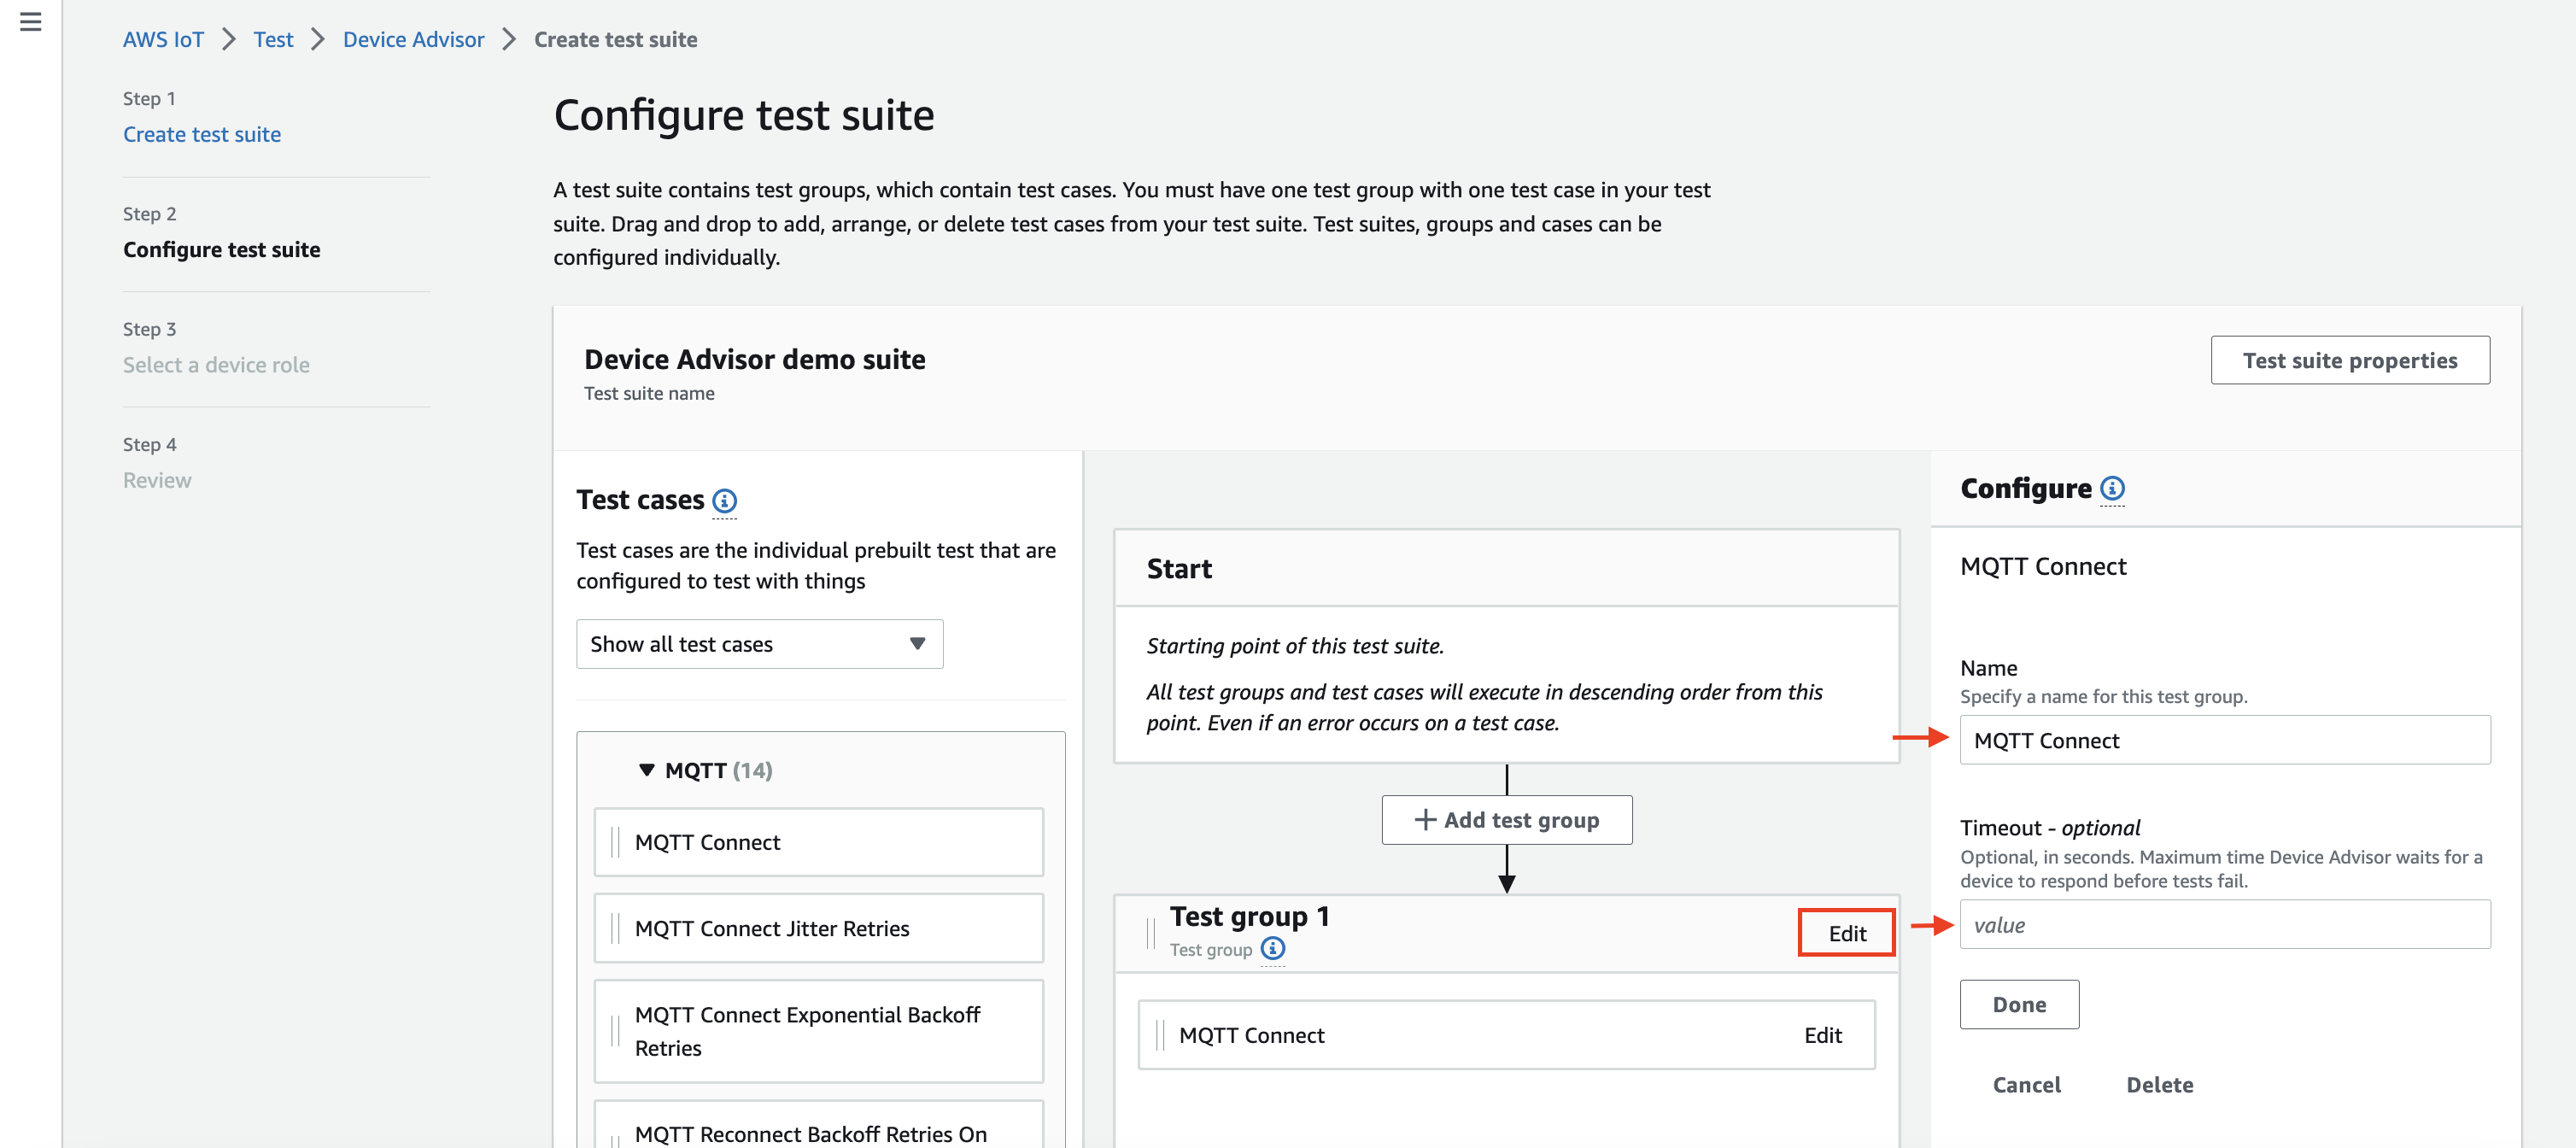 Interfaccia di configurazione della suite di test con opzioni per configurare gruppi di test, casi di test, impostazioni di timeout e punti di partenza per l'esecuzione della suite di test.